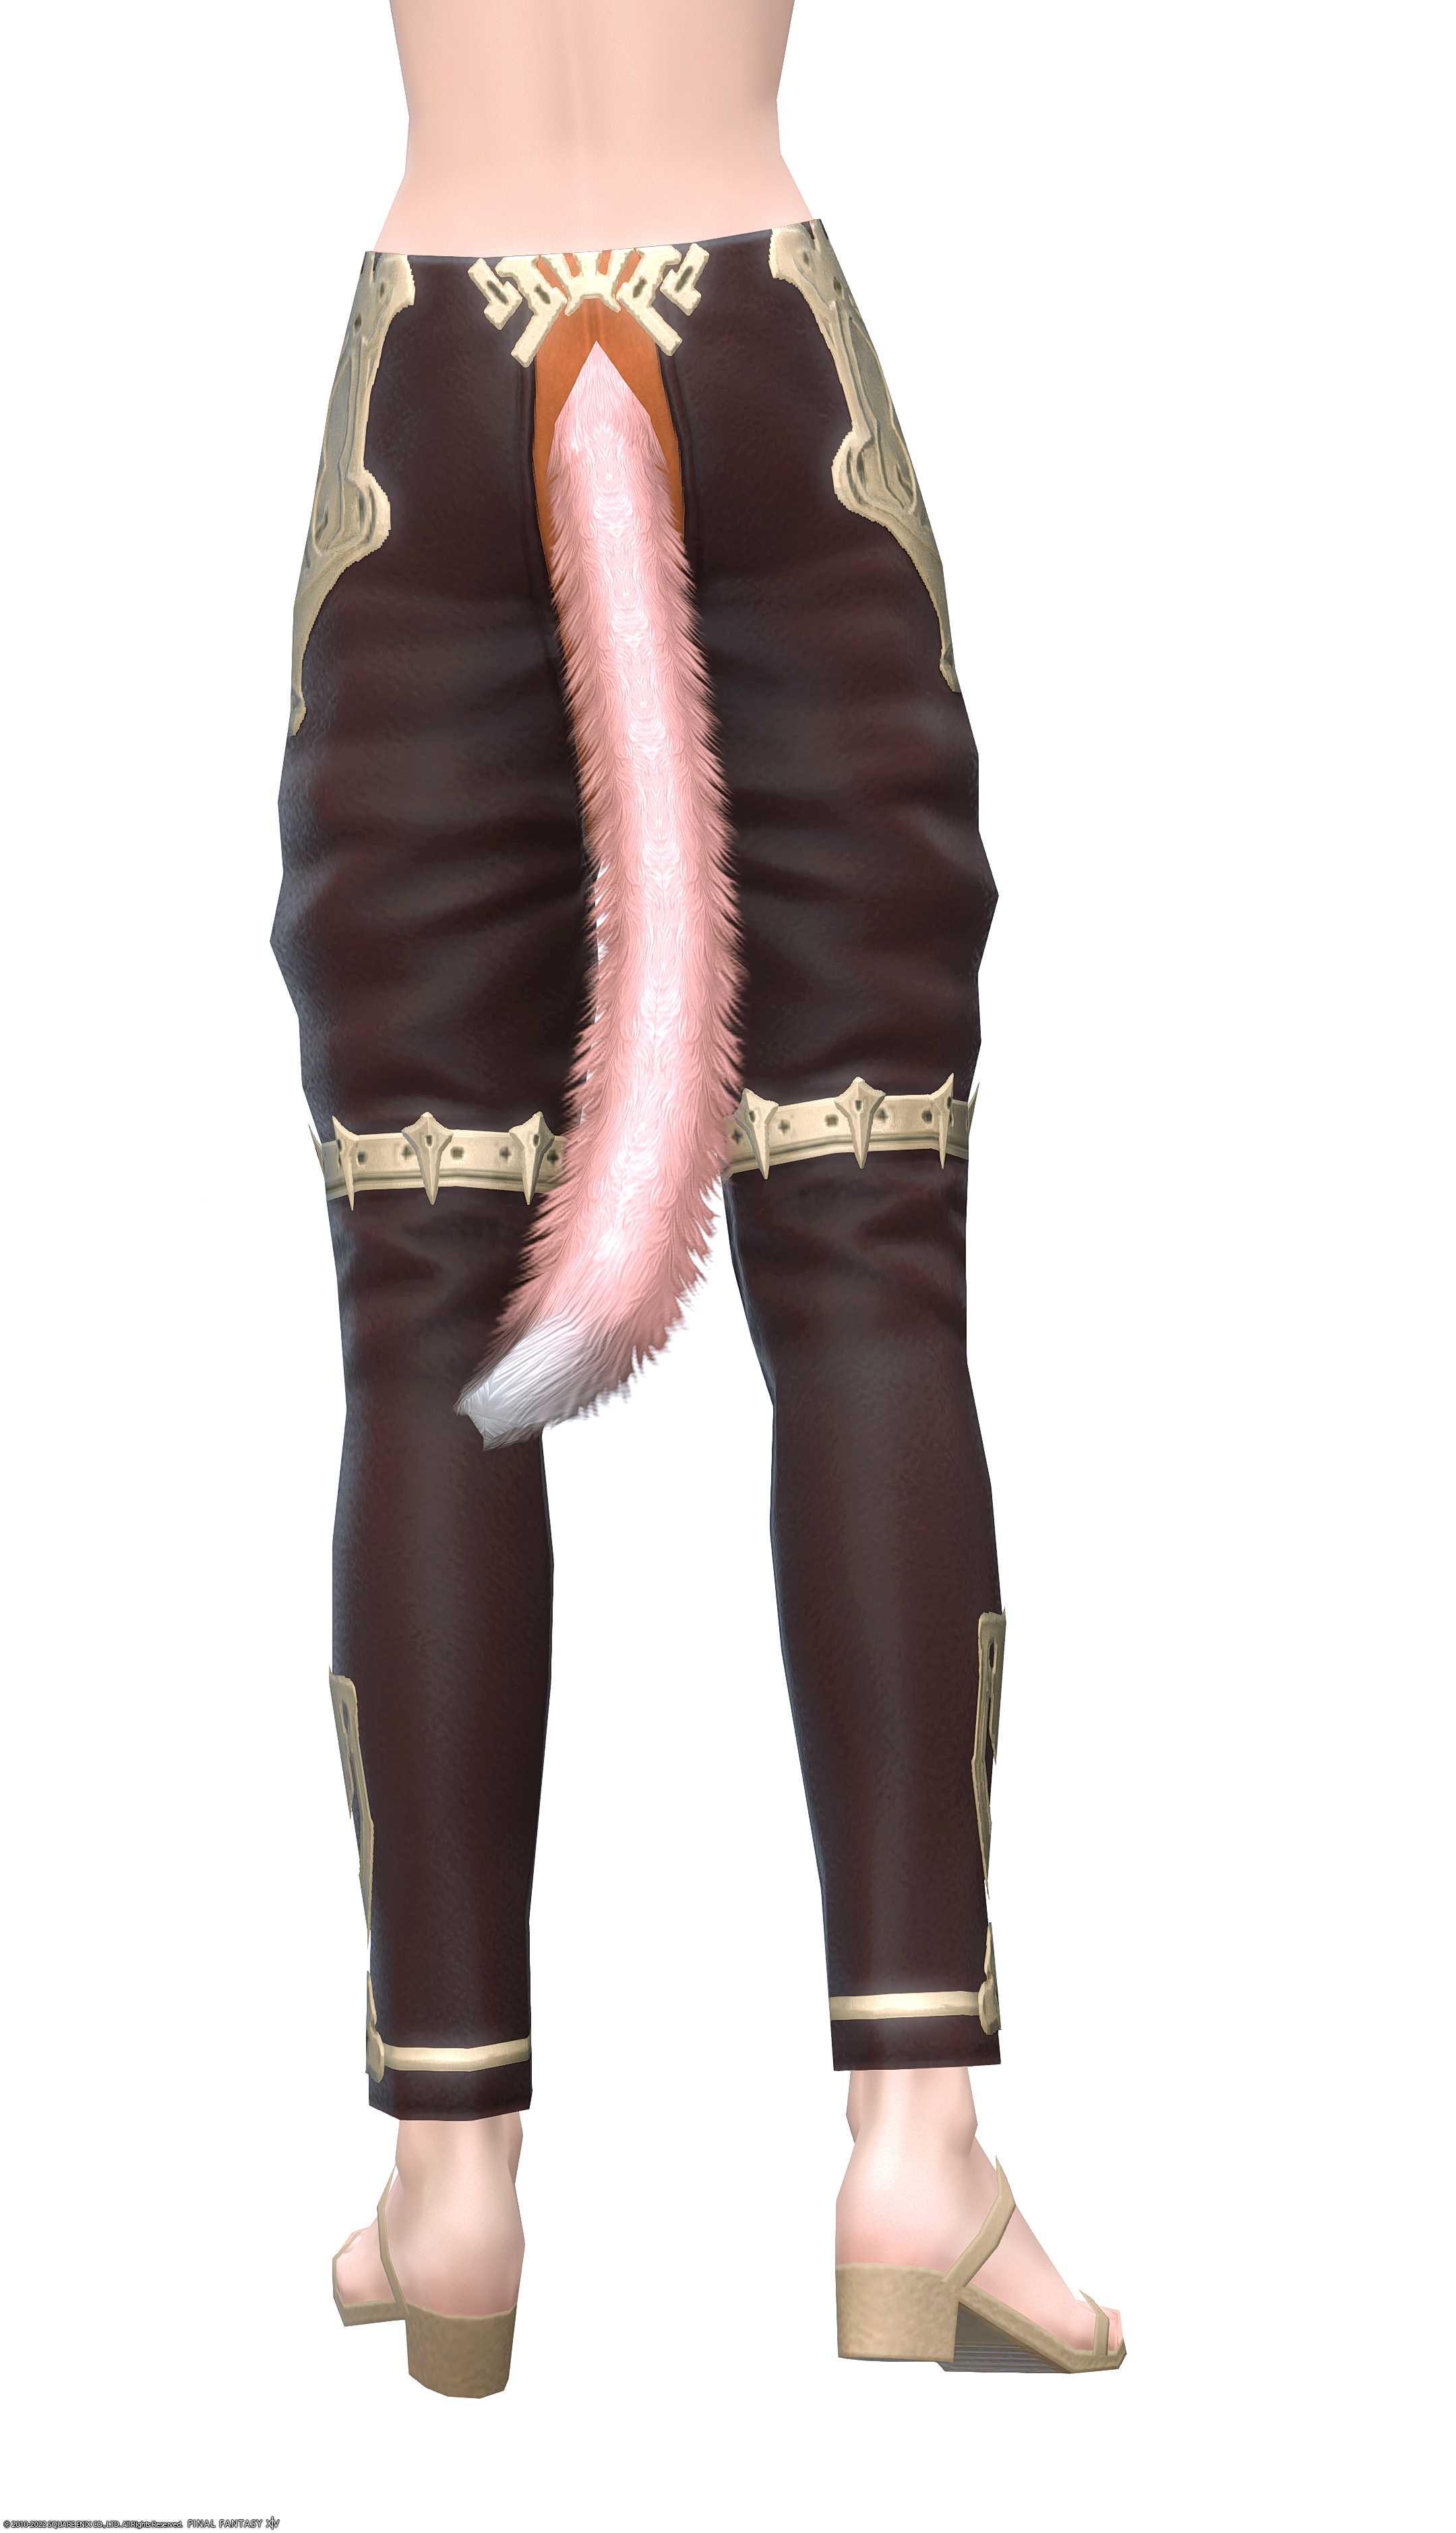 レプリカ・ハイアラガン・ディフェンダートラウザー | FF14ミラプリ - Replica High Allagan Trousers of Fending - パンツ/スキニー